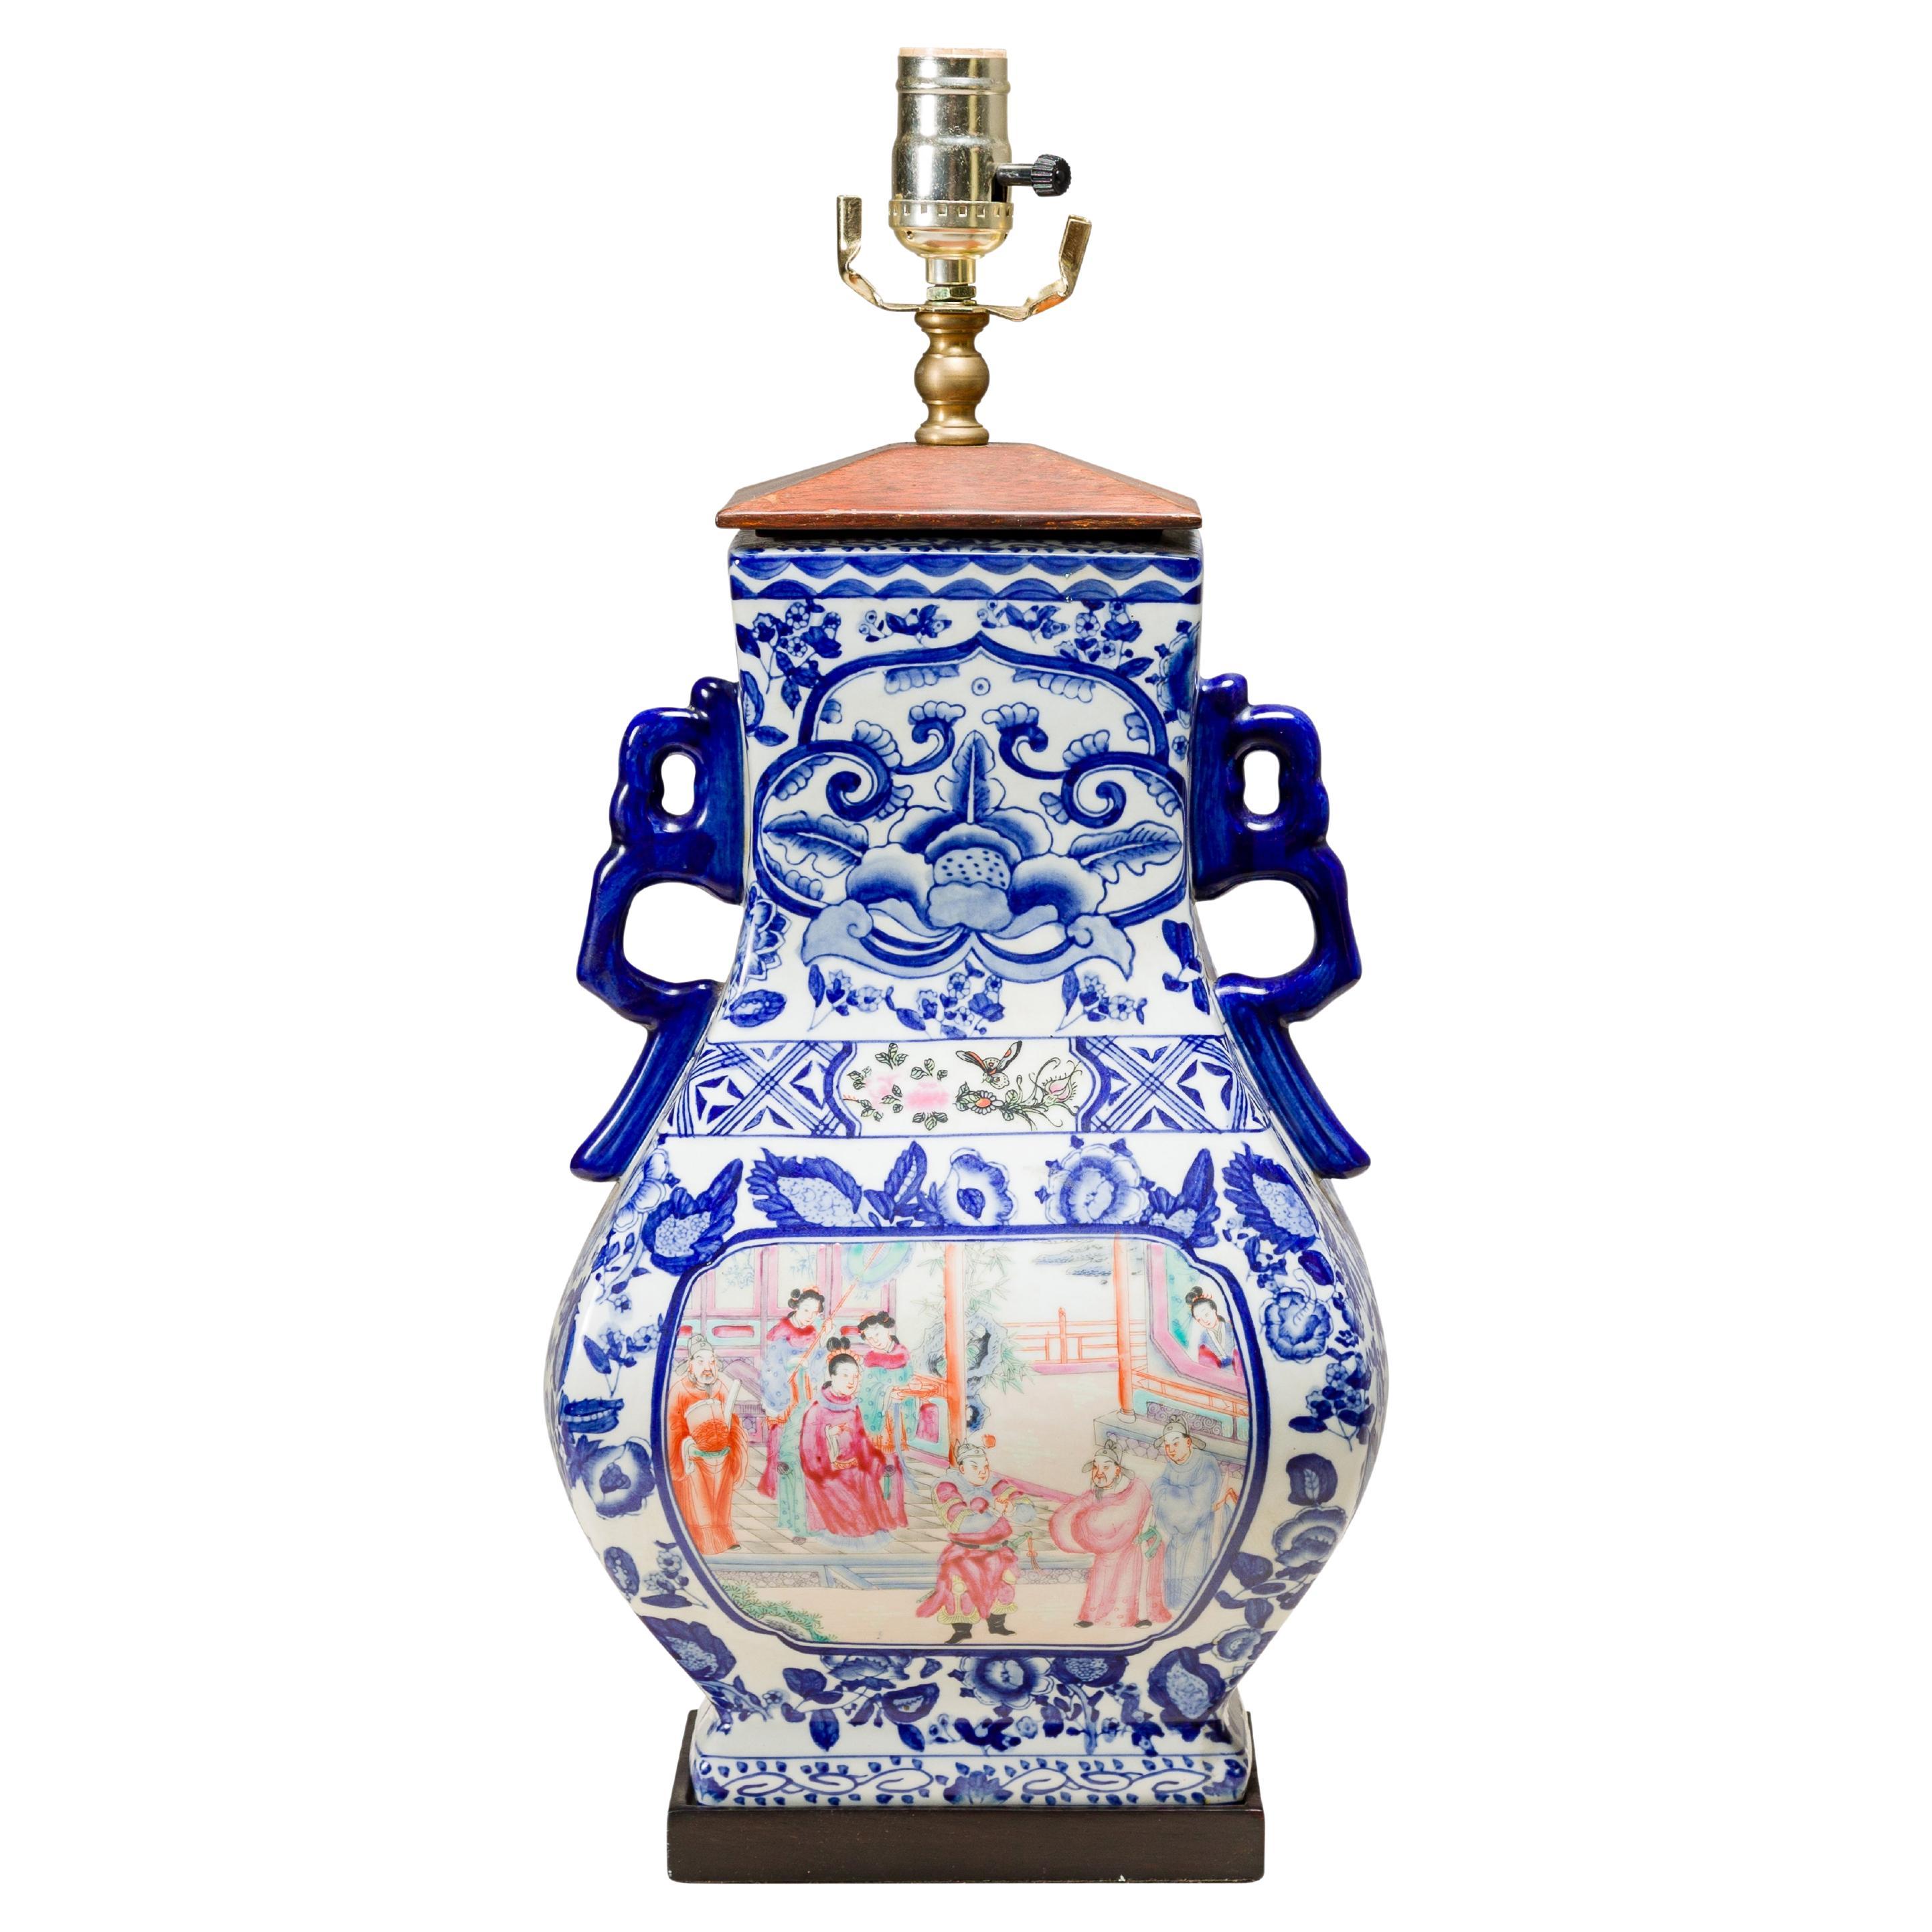 Lampe de table en porcelaine bleue et blanche avec des scènes de cour peintes à la main